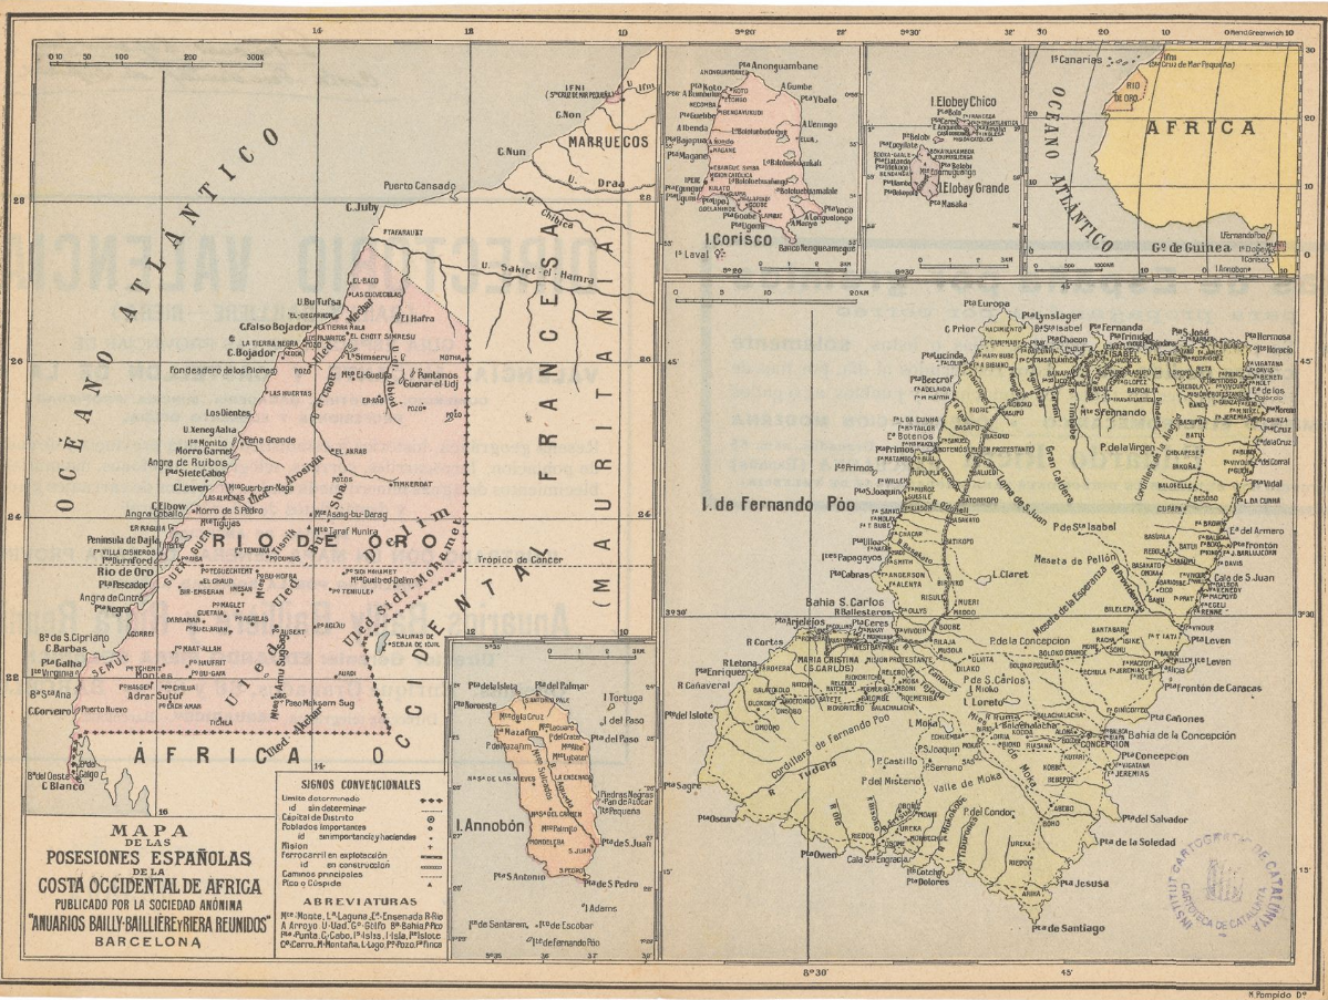 Mapa de las colonias españolas en el África (1900). Fuente Cartoteca de Catalunya